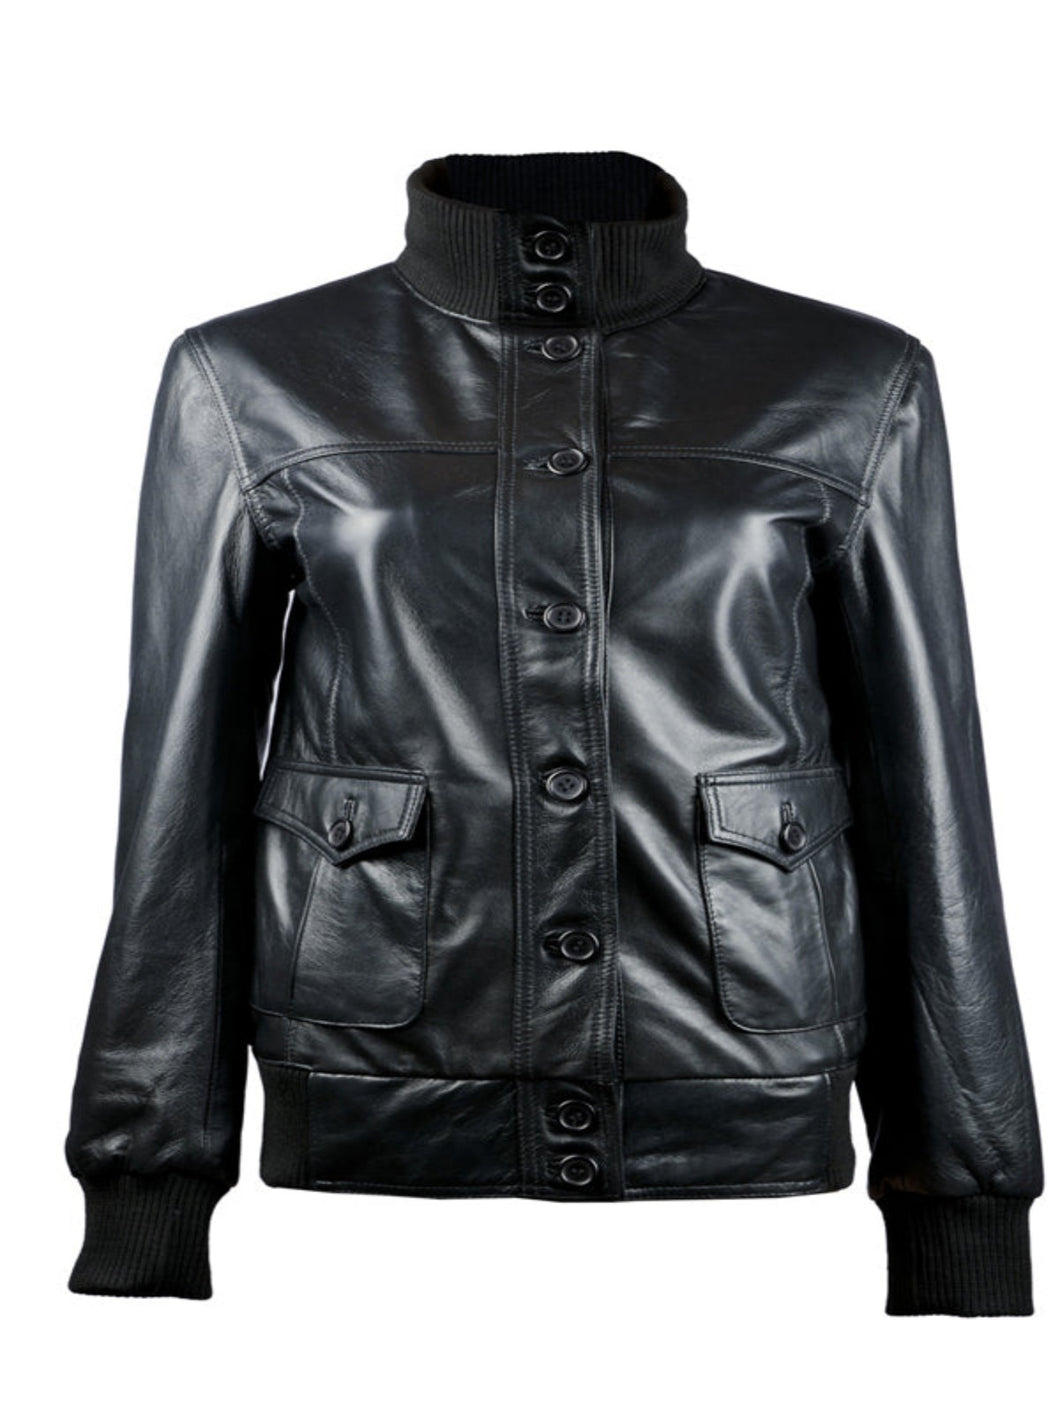 New Women Black Bomber Leather Jacket